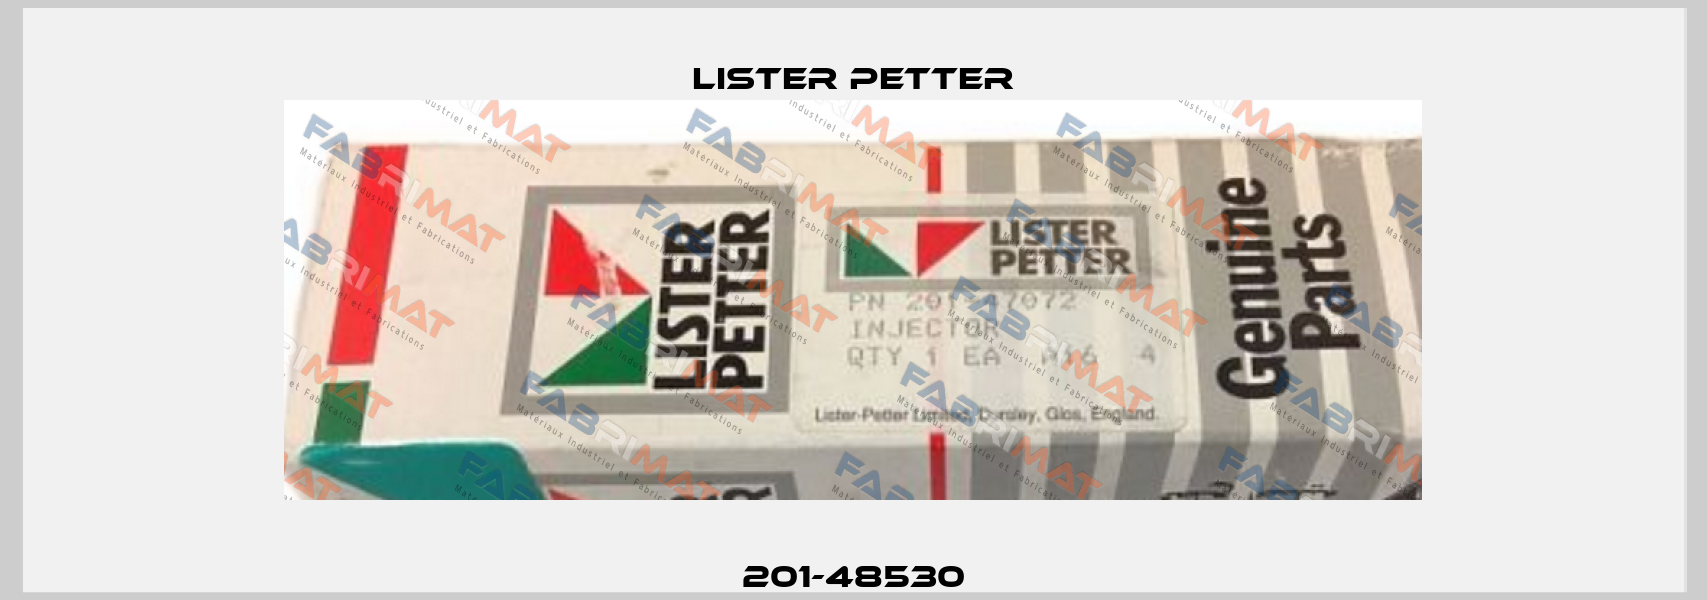 201-48530 Lister Petter